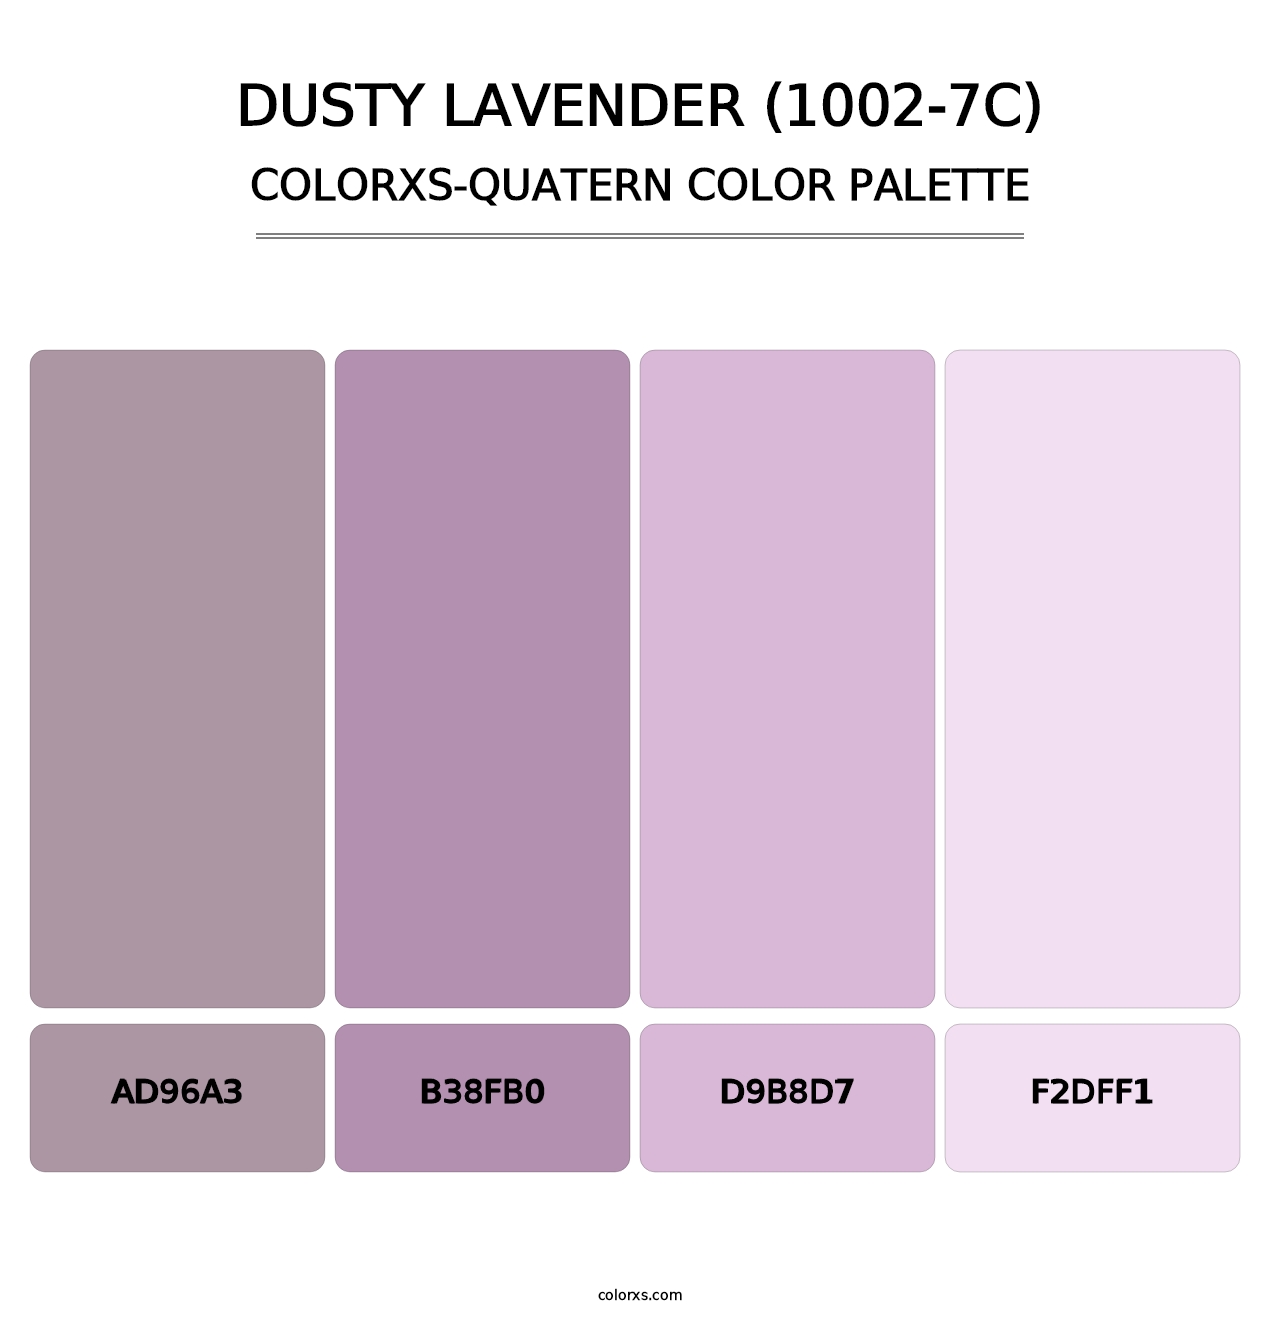 Dusty Lavender (1002-7C) - Colorxs Quatern Palette